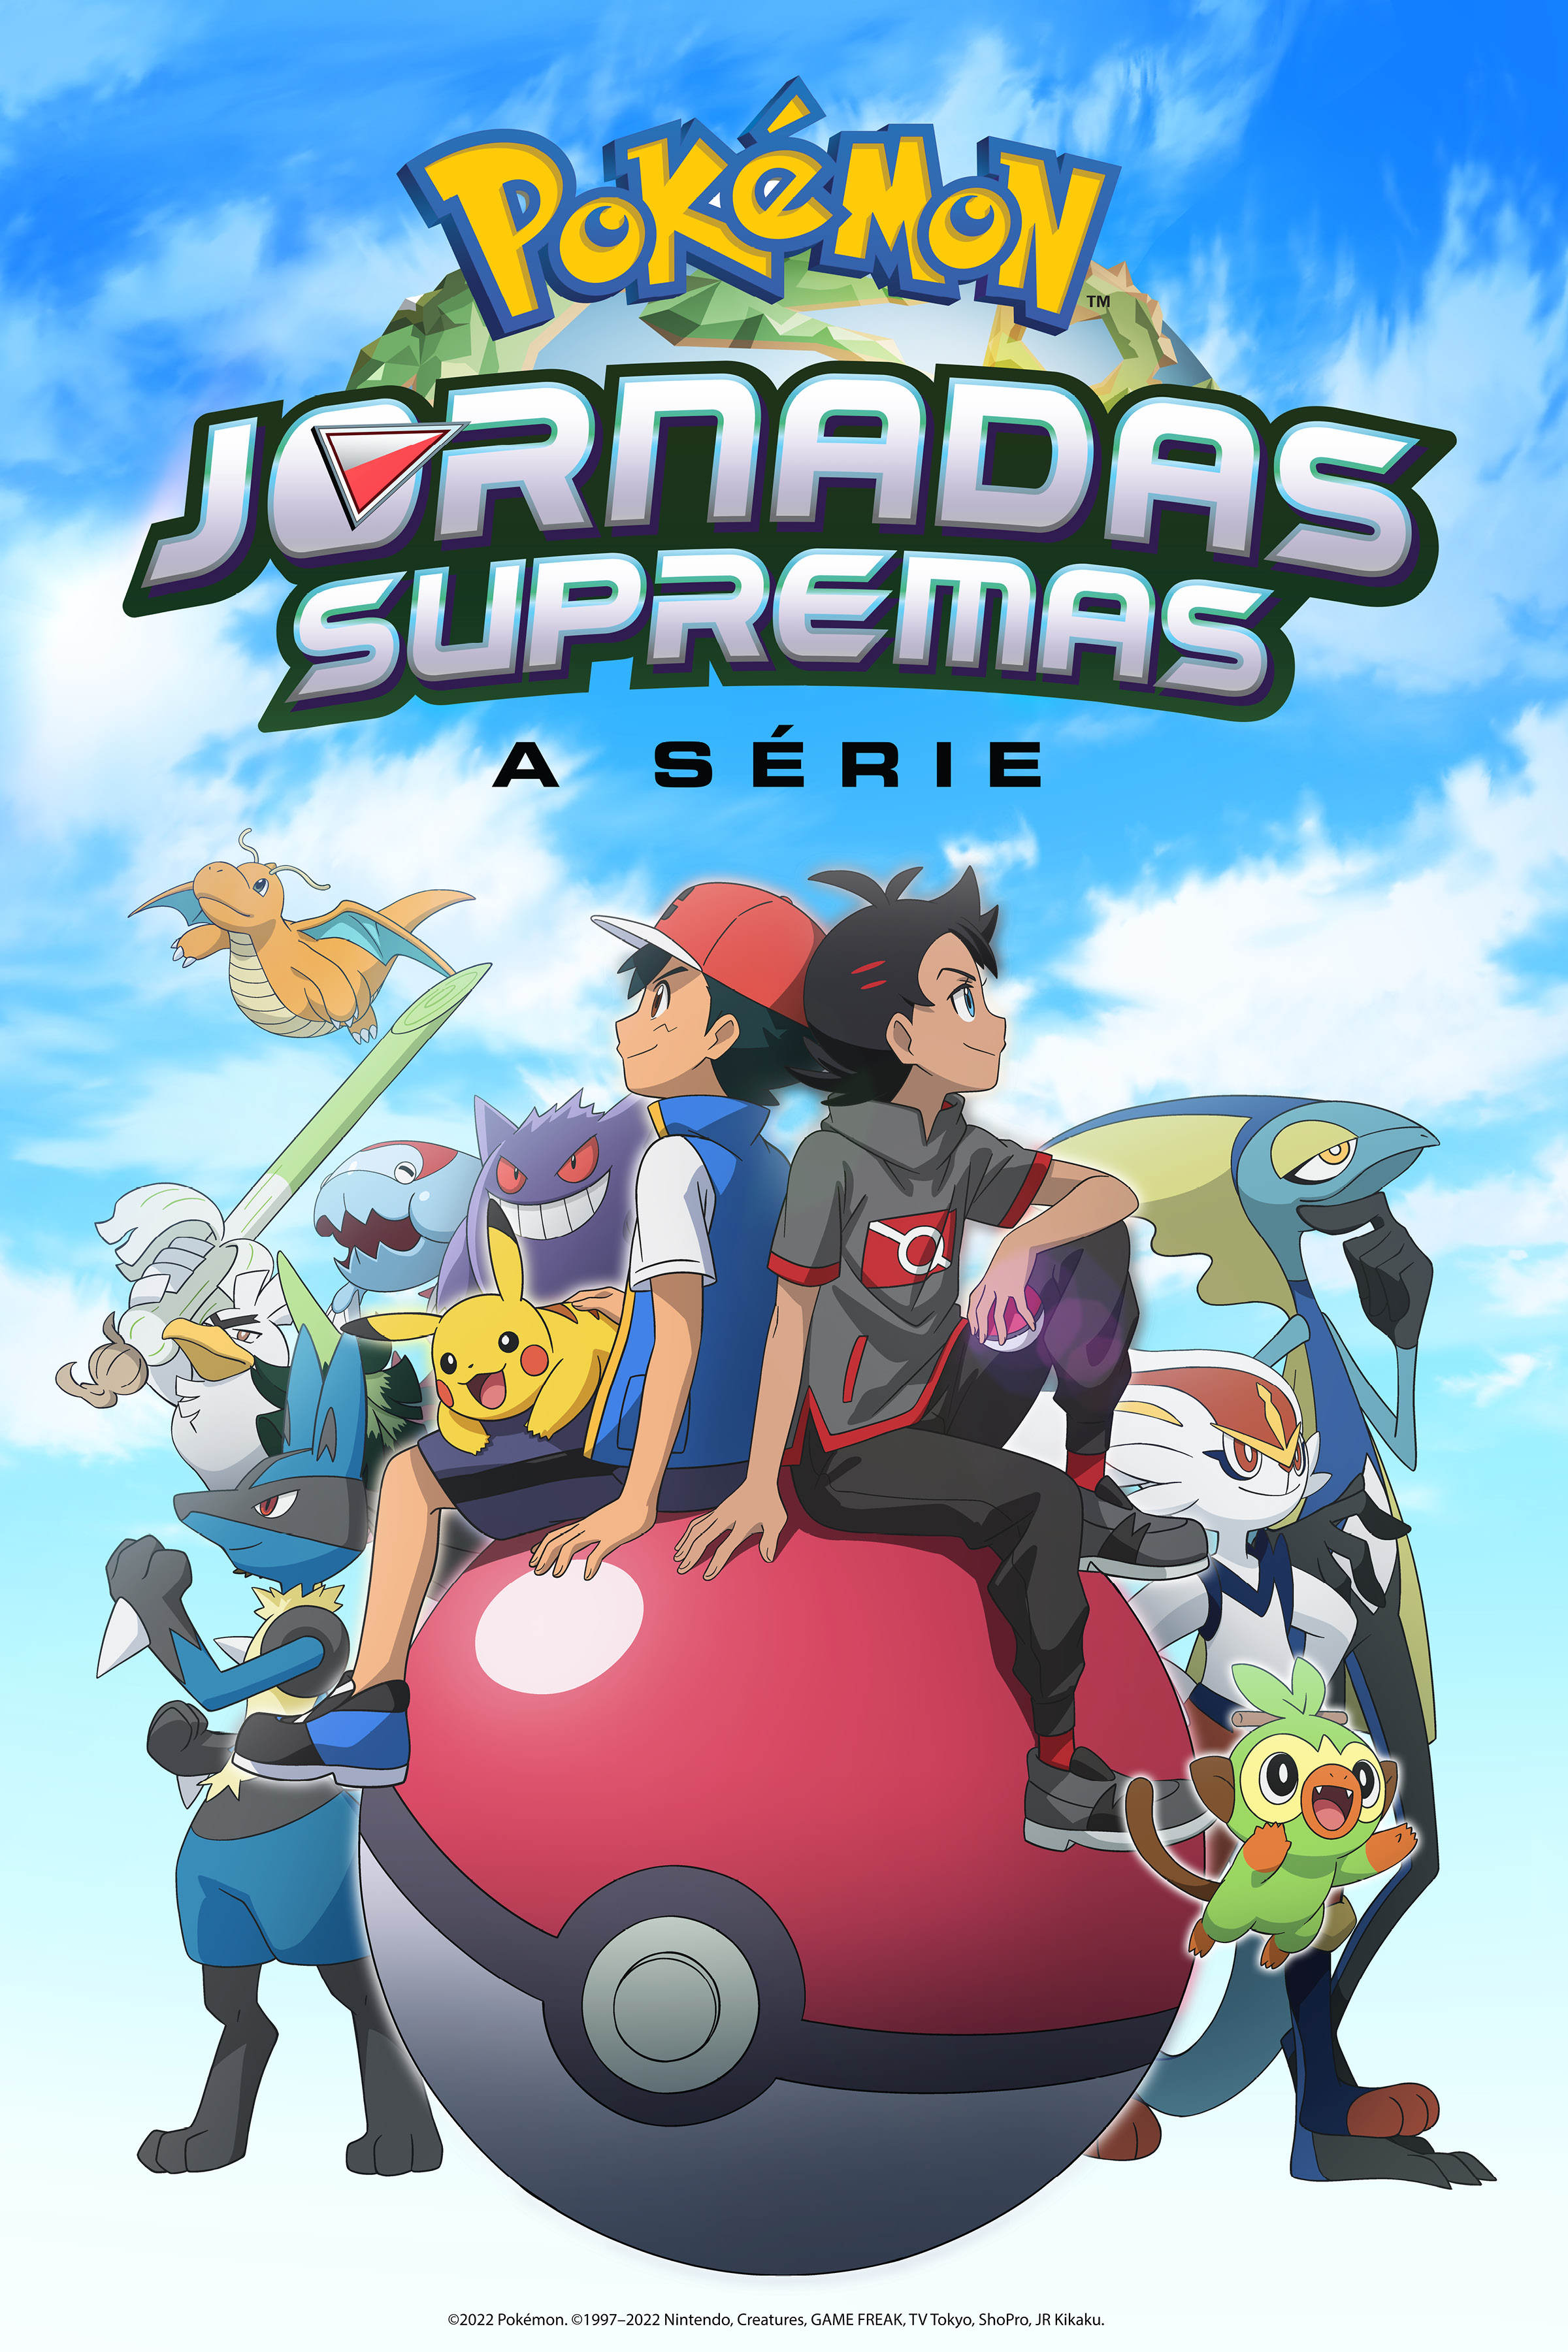 ◓ Anime Pokémon Journeys (Pokémon Jornadas Supremas) • Episódio